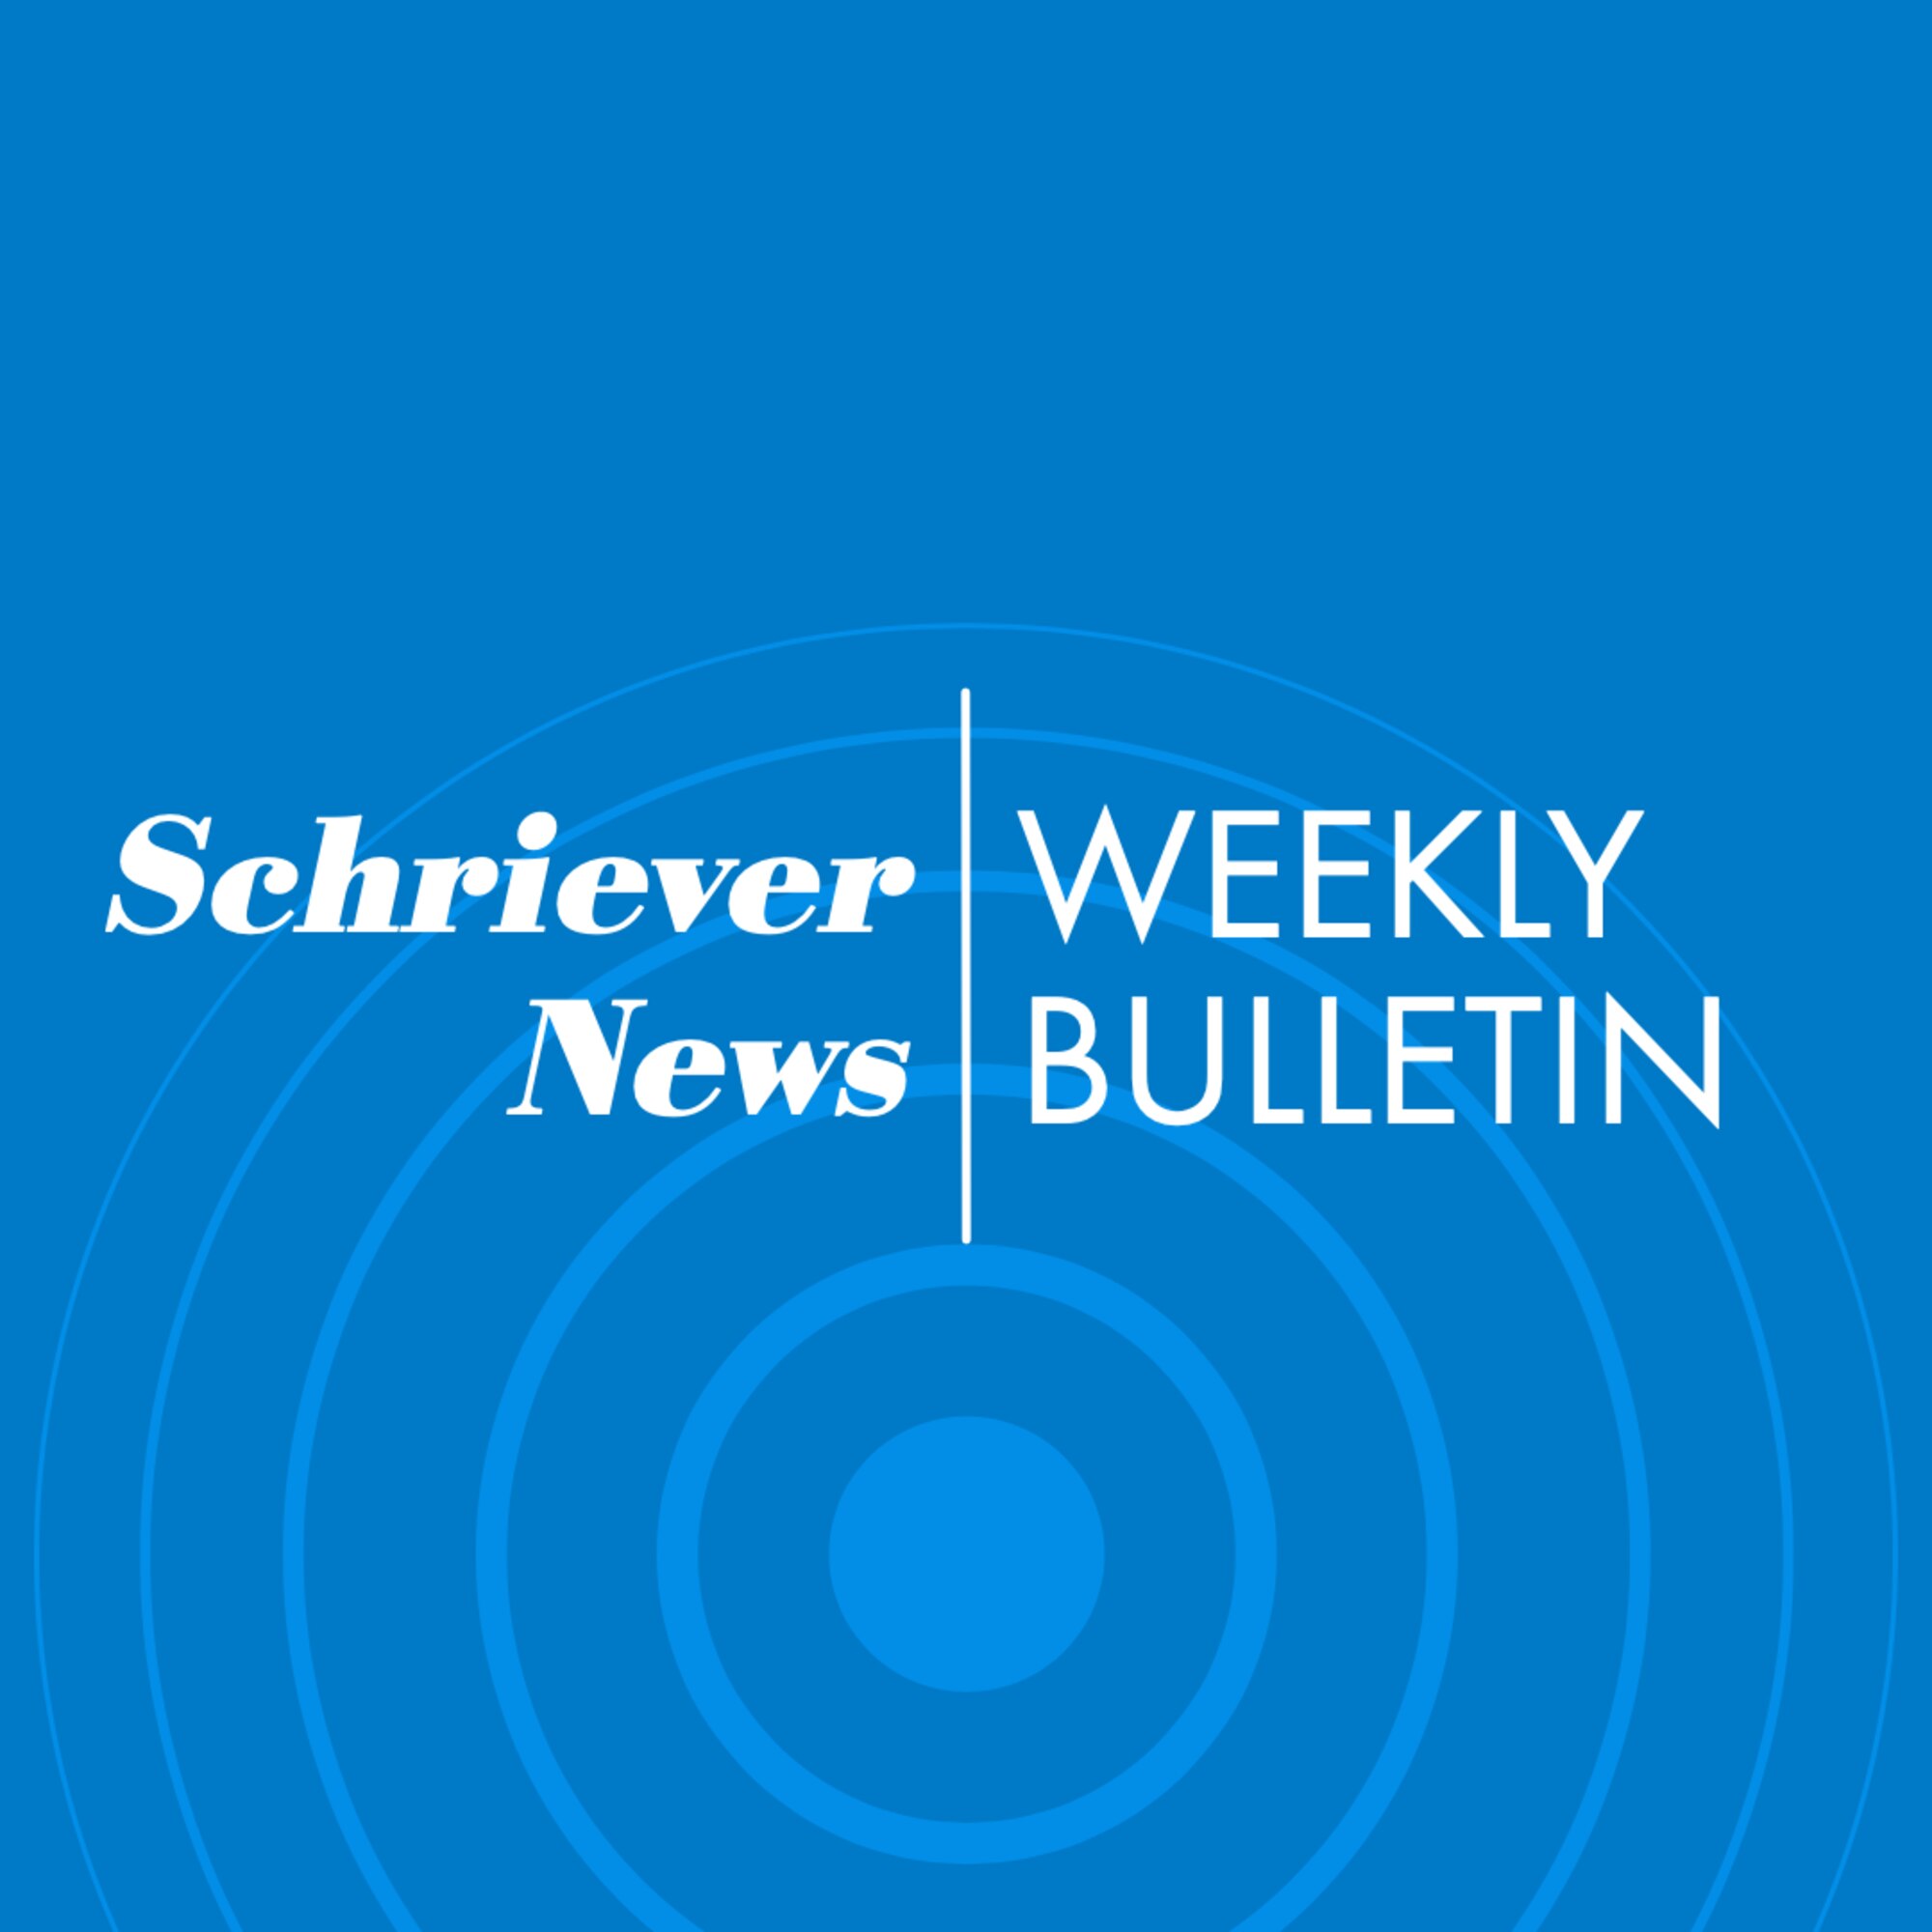 Schriever news weekly bulletin graphic